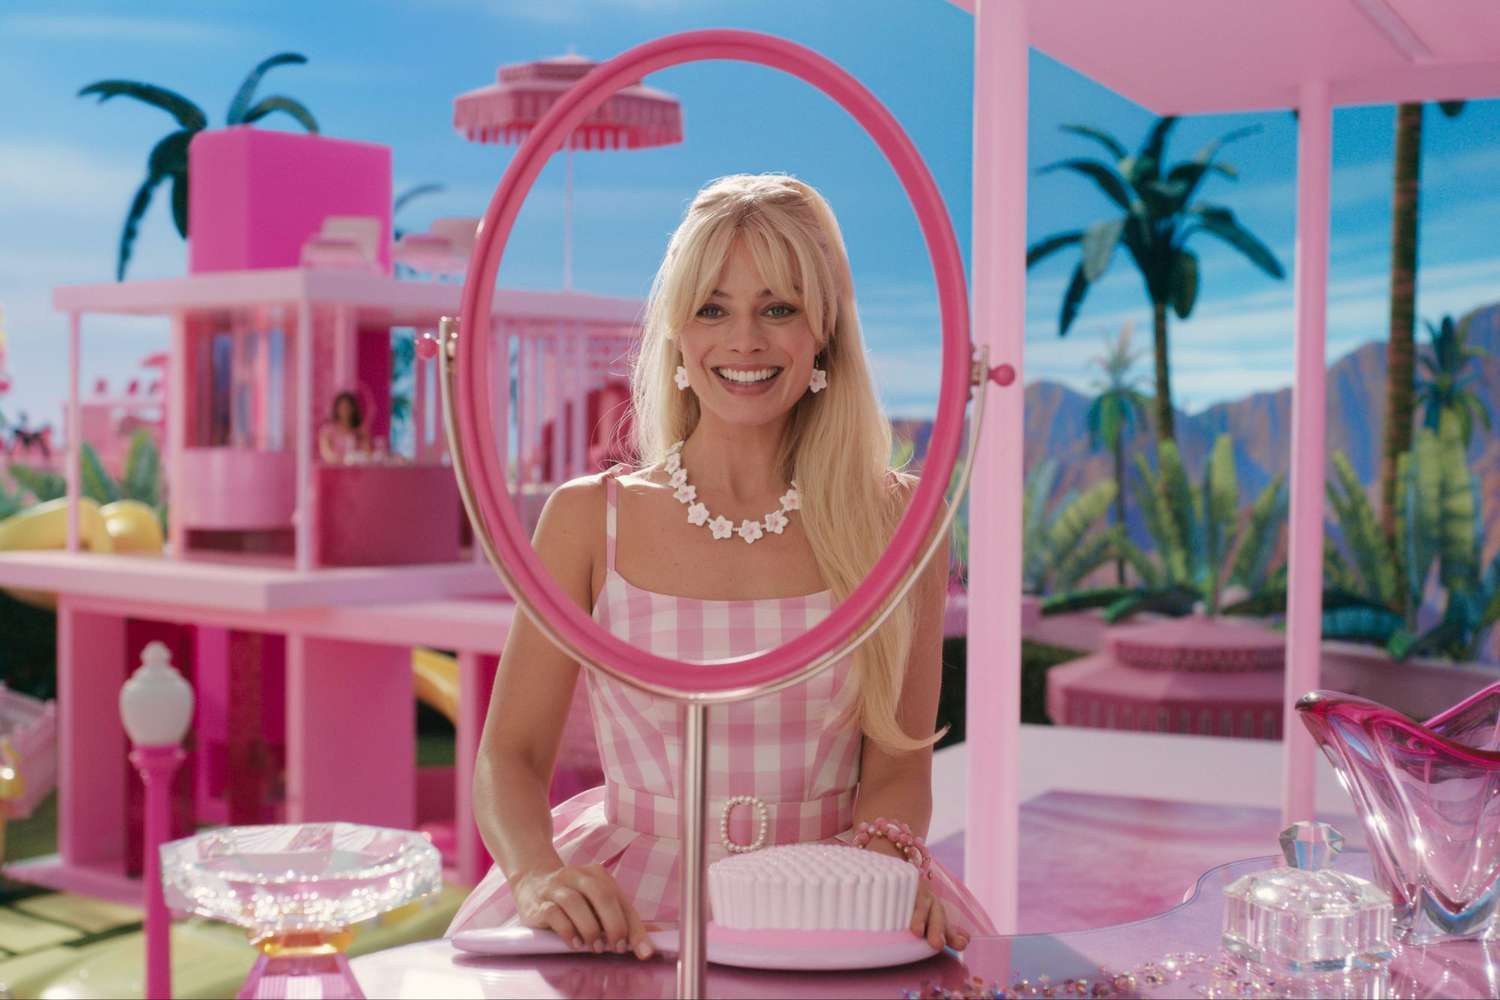 Fotografía cedida por Warner Bros donde aparece la actriz Margot Robbie durante un fragmento de la película "Barbie". Hay películas que logran convertirse en fenómeno incluso antes de estrenarse. EFE/Warner Bros